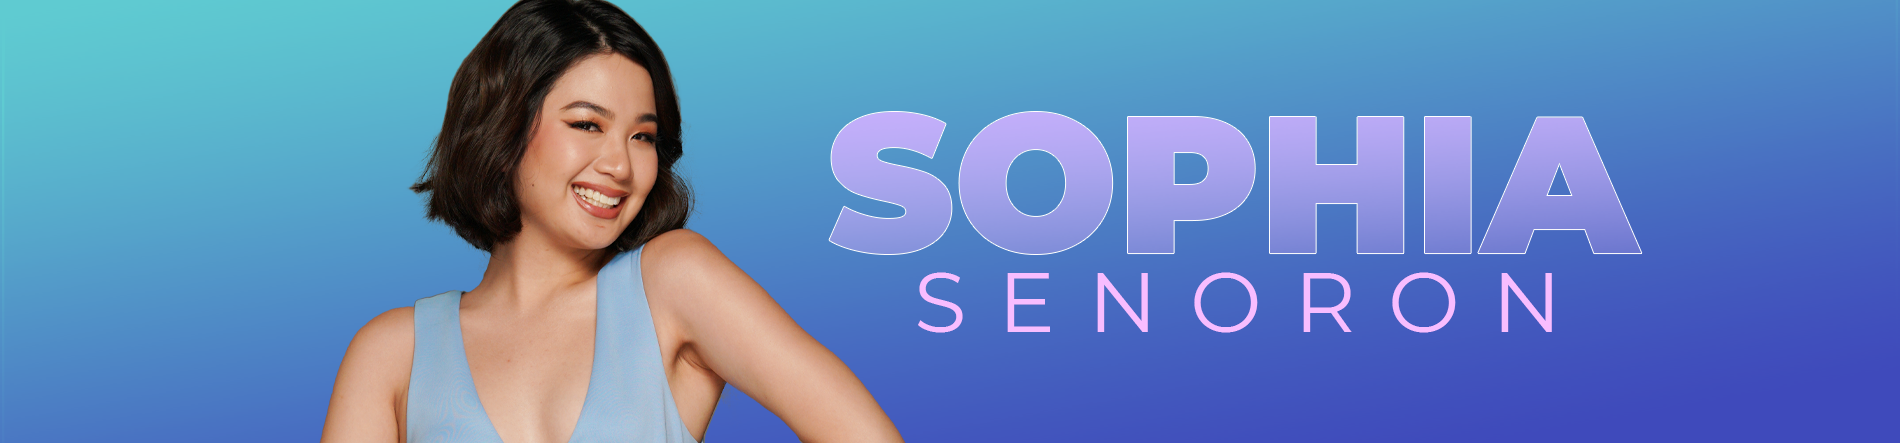 Sophia Senoron Desktop Banner